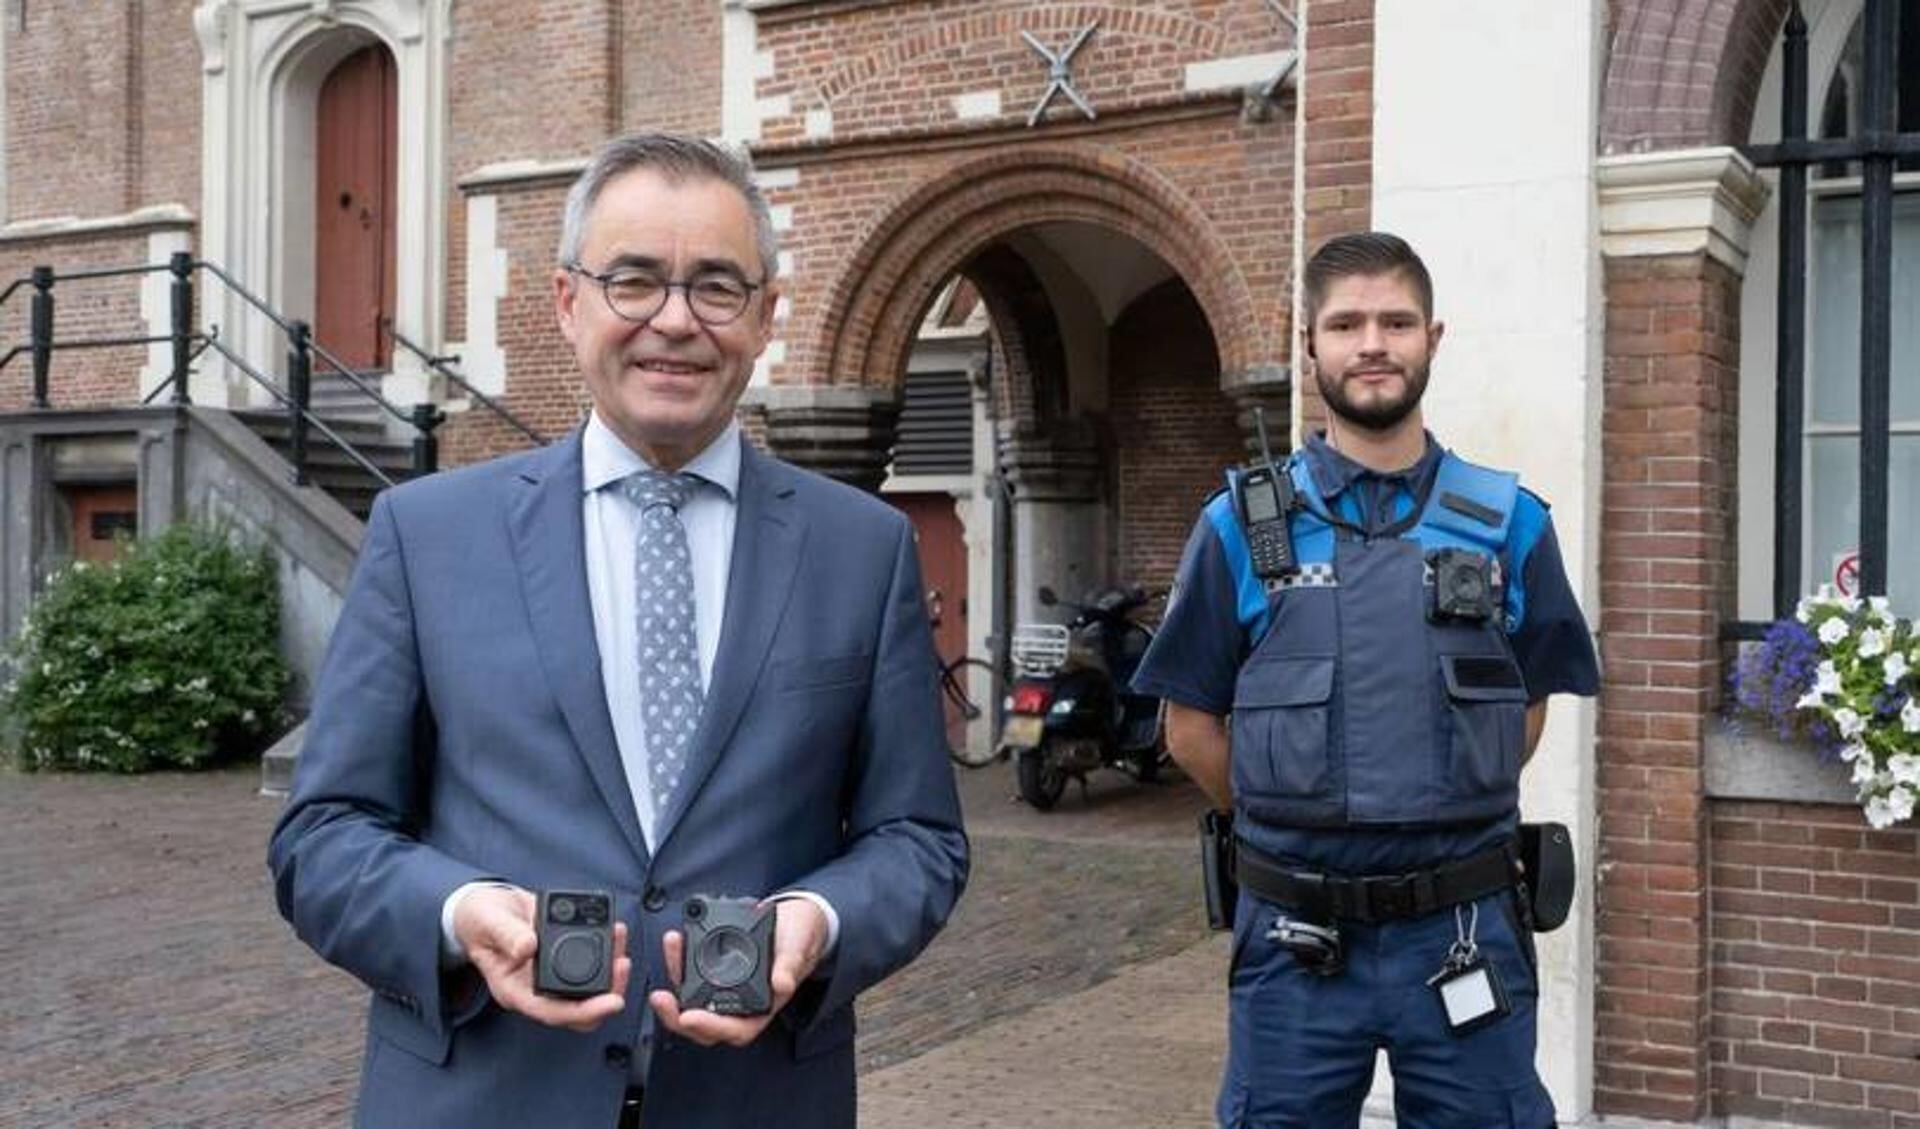 Handhavers van de gemeente Haarlem mogen vanaf 1 oktober de bodycam gebruiken als ze in een voor hen onveilige situatie komen. 